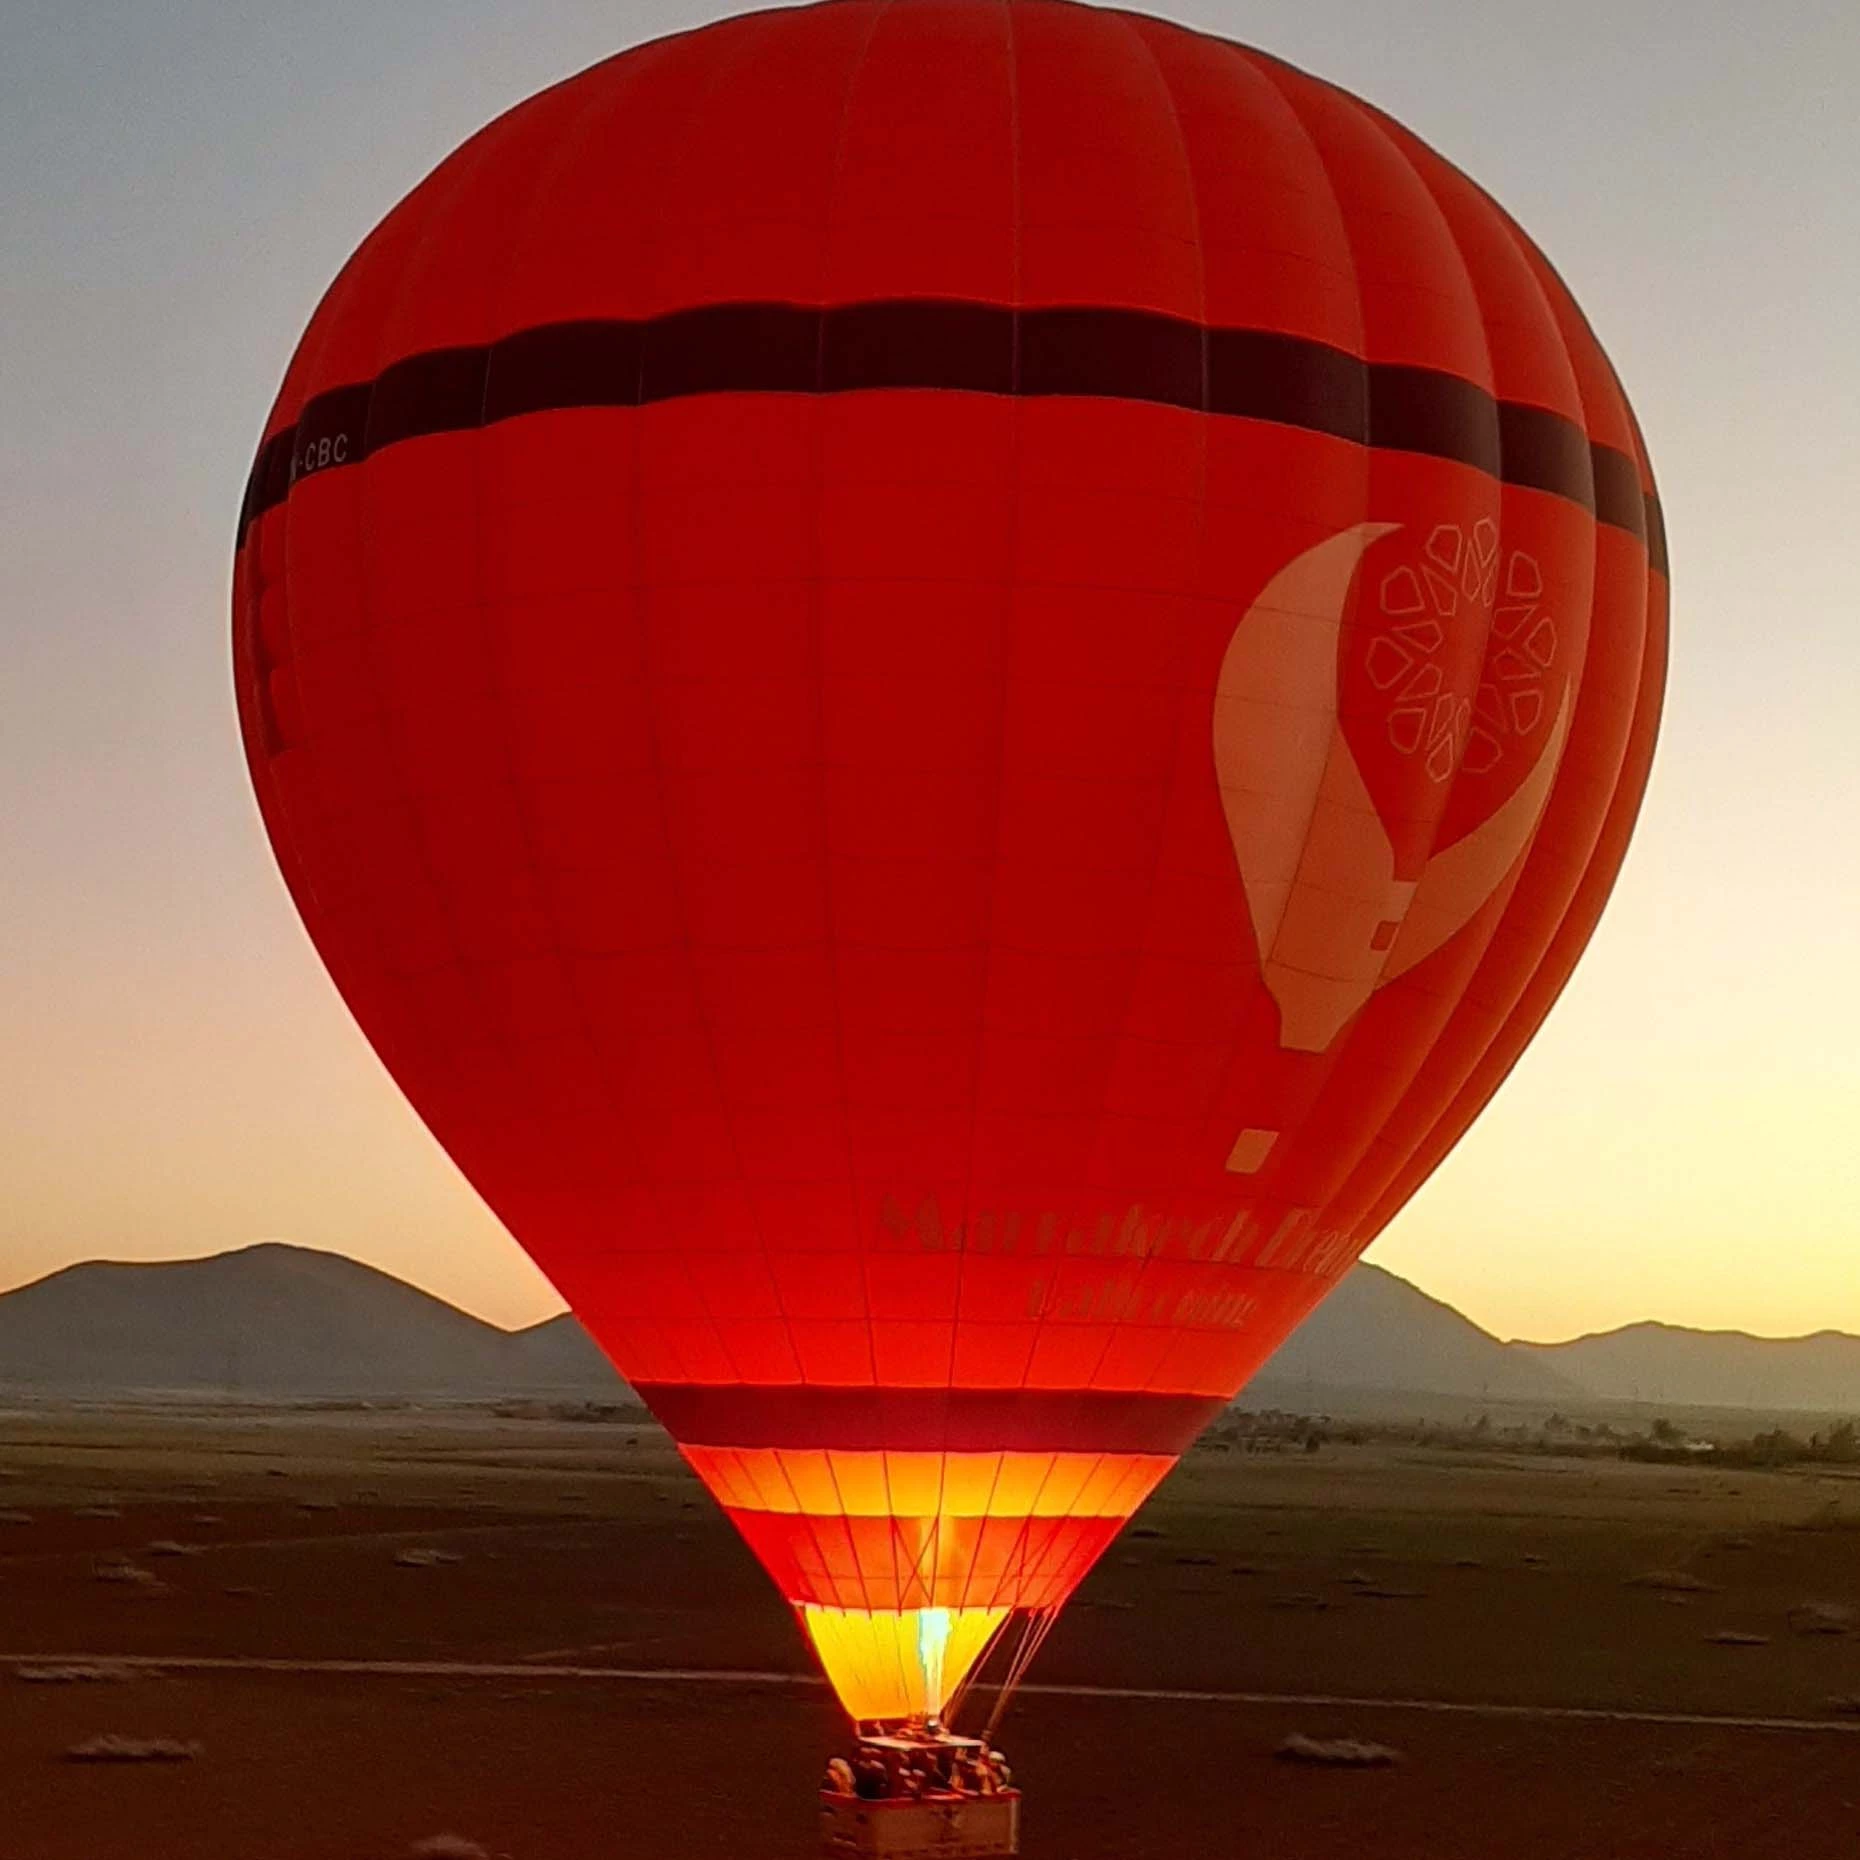 Hot Air Balloon in Marrakech